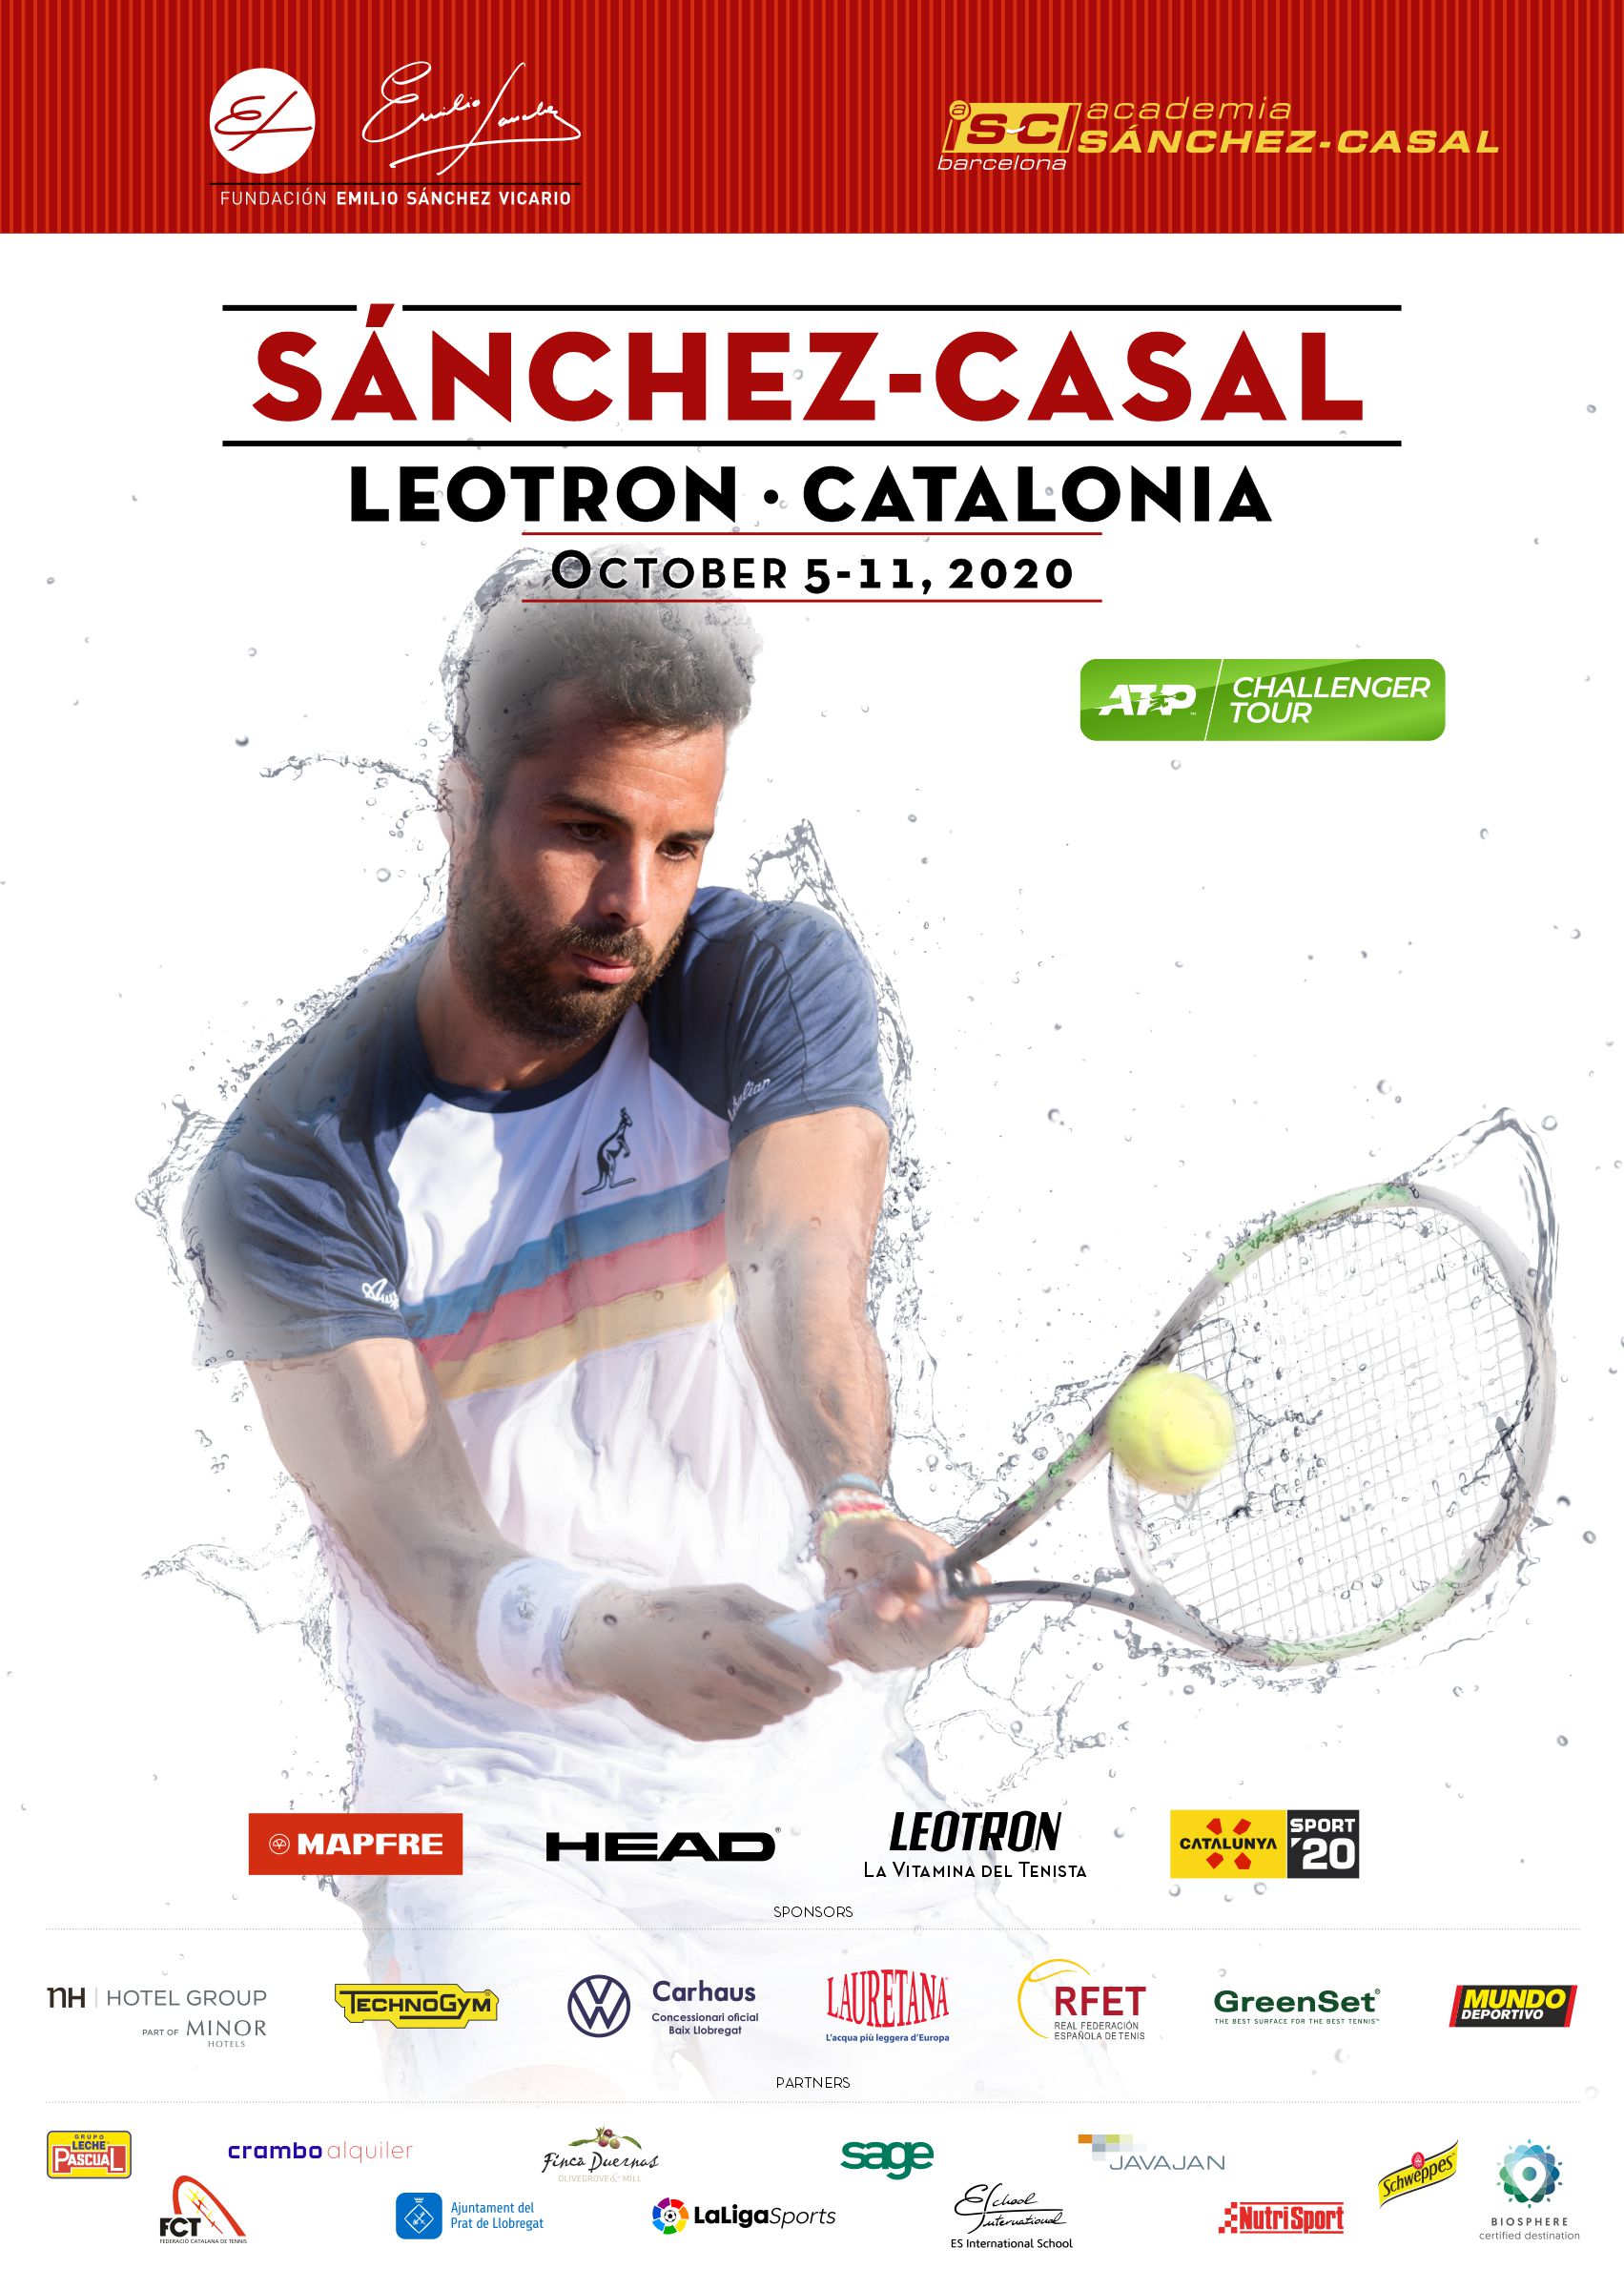 Image for III Edición Torneo Sánchez-Casal Leotrón·Catalonia, perteneciente al ATP Challenger Tour, organizado por la Fundación Emilio Sánchez Vicario.